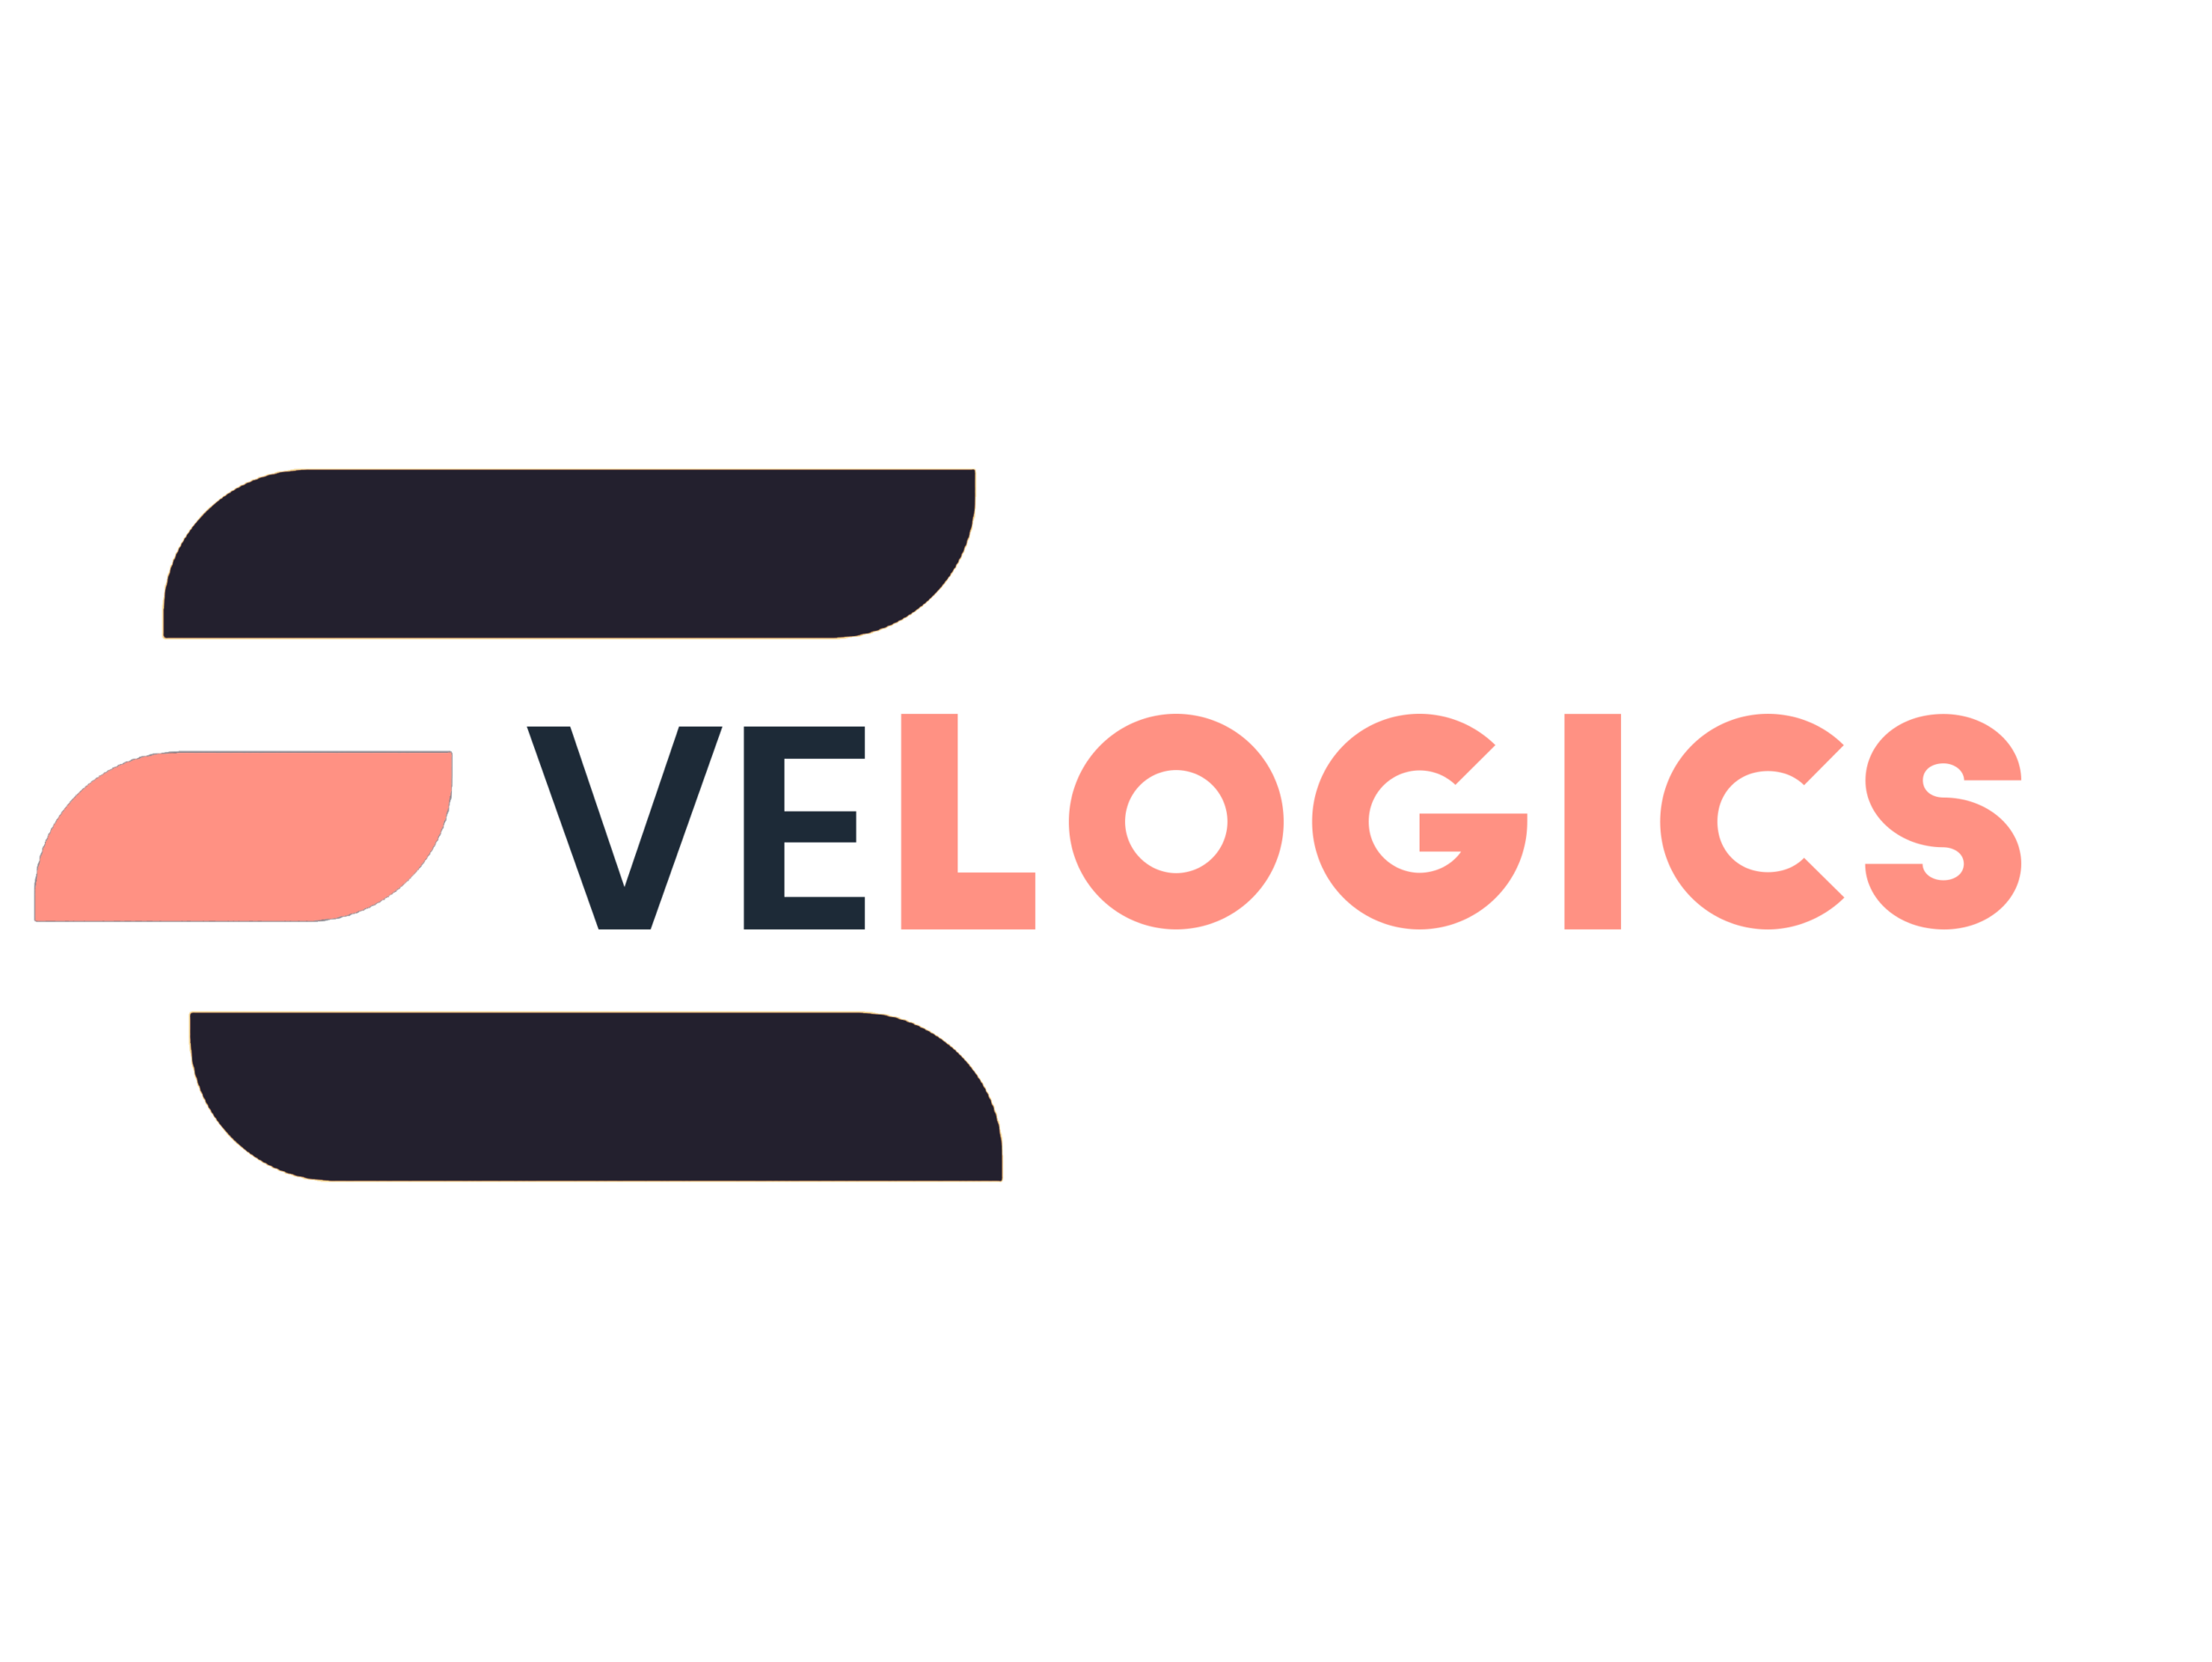 evelogics-logo